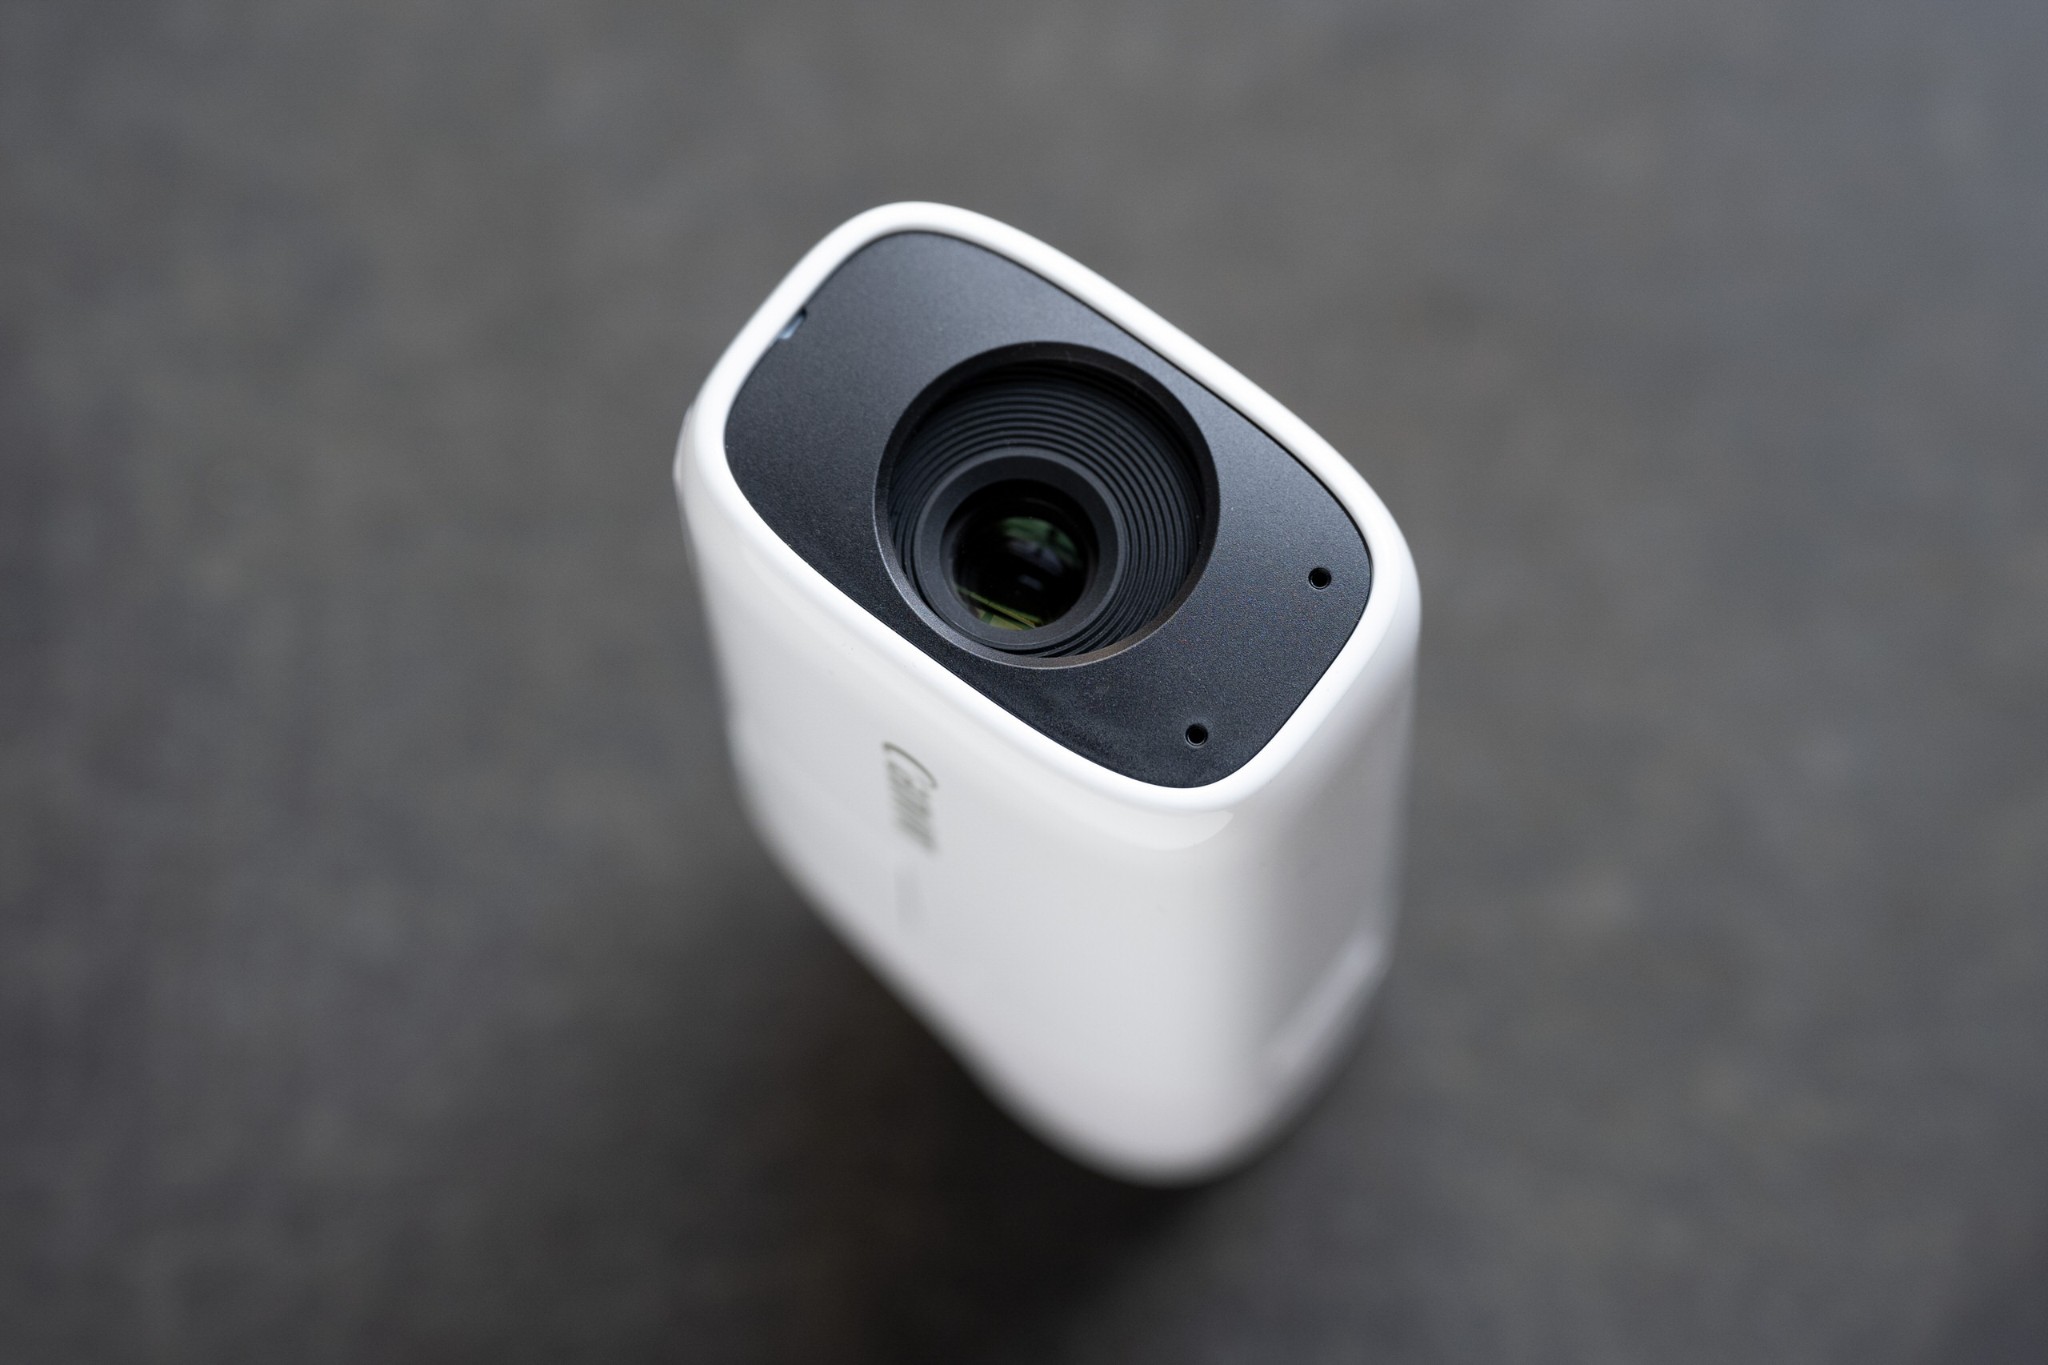 Canon ra mắt máy ảnh PowerShot Zoom nhỏ gọn như ống nhòm và có khả năng zoom tới 400mm